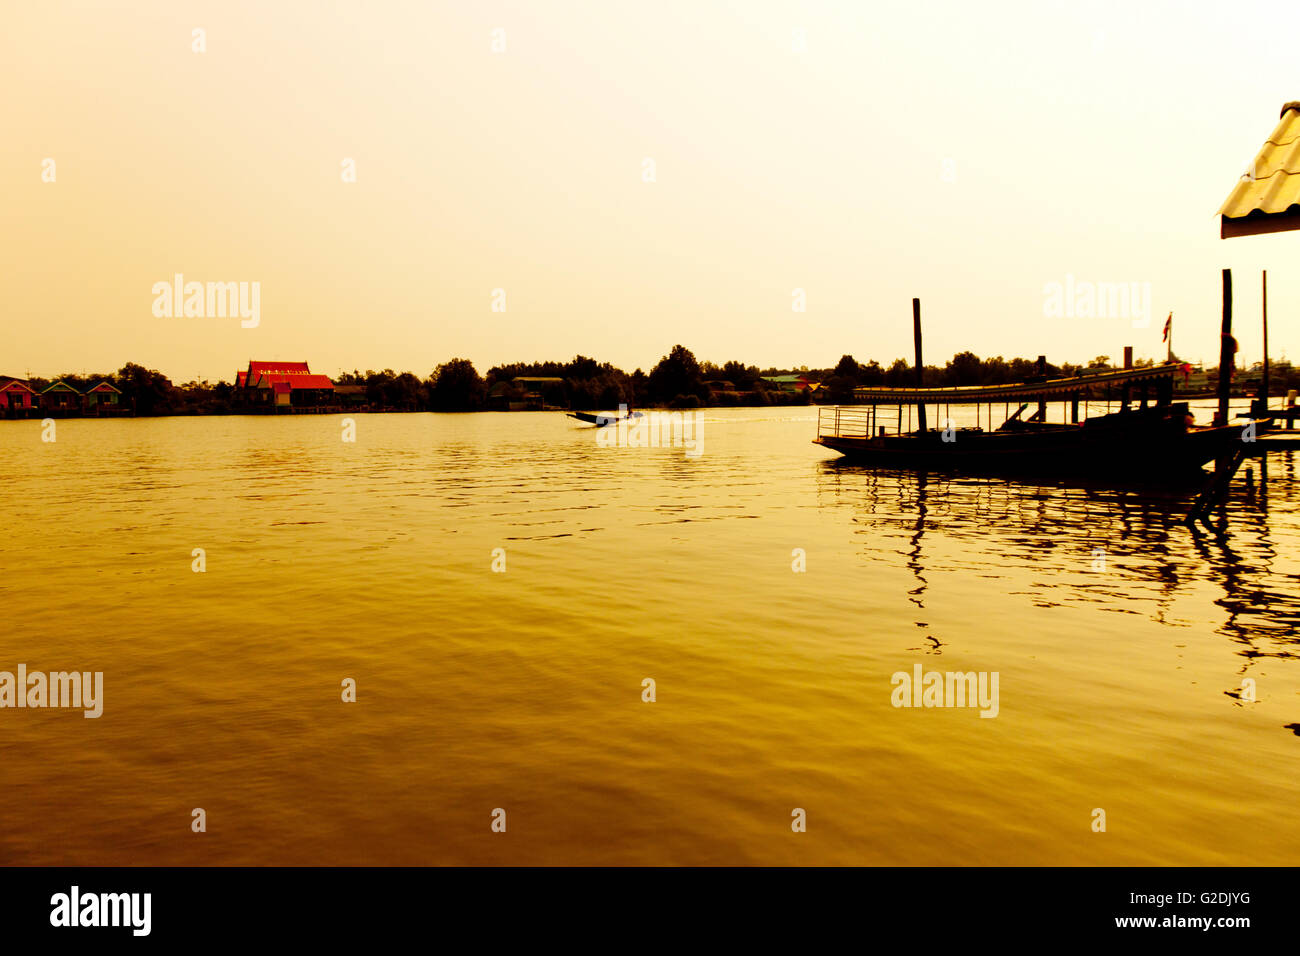 Bois de la longue queue bateau de moteur à la rivière à l'aube d'une lumière dorée. Lever du soleil grâce à silhouette Banque D'Images